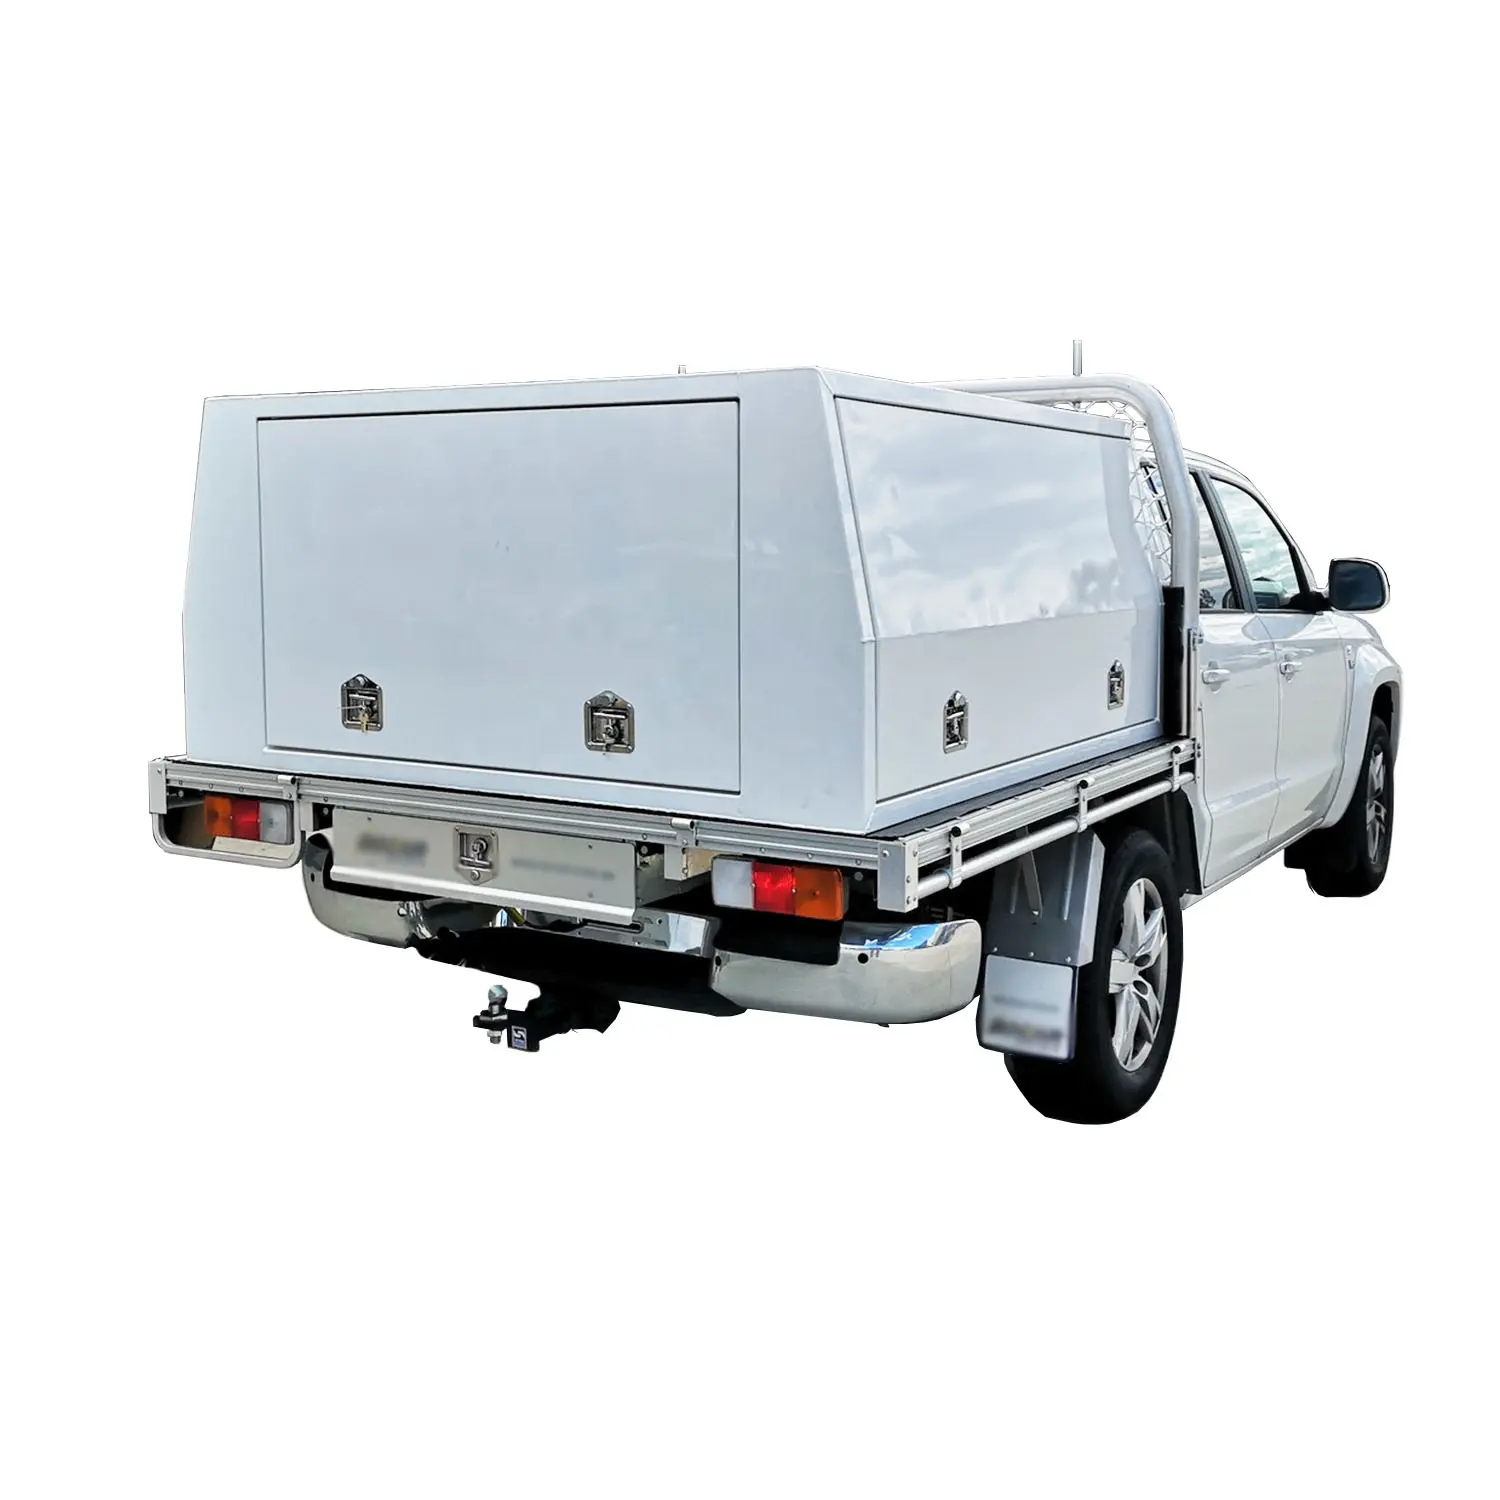 Pó branco revestido dual cab UTE caminhão bandeja dossel caixa de ferramentas 3 portas 1800x1800 alumínio liga tradesmantop